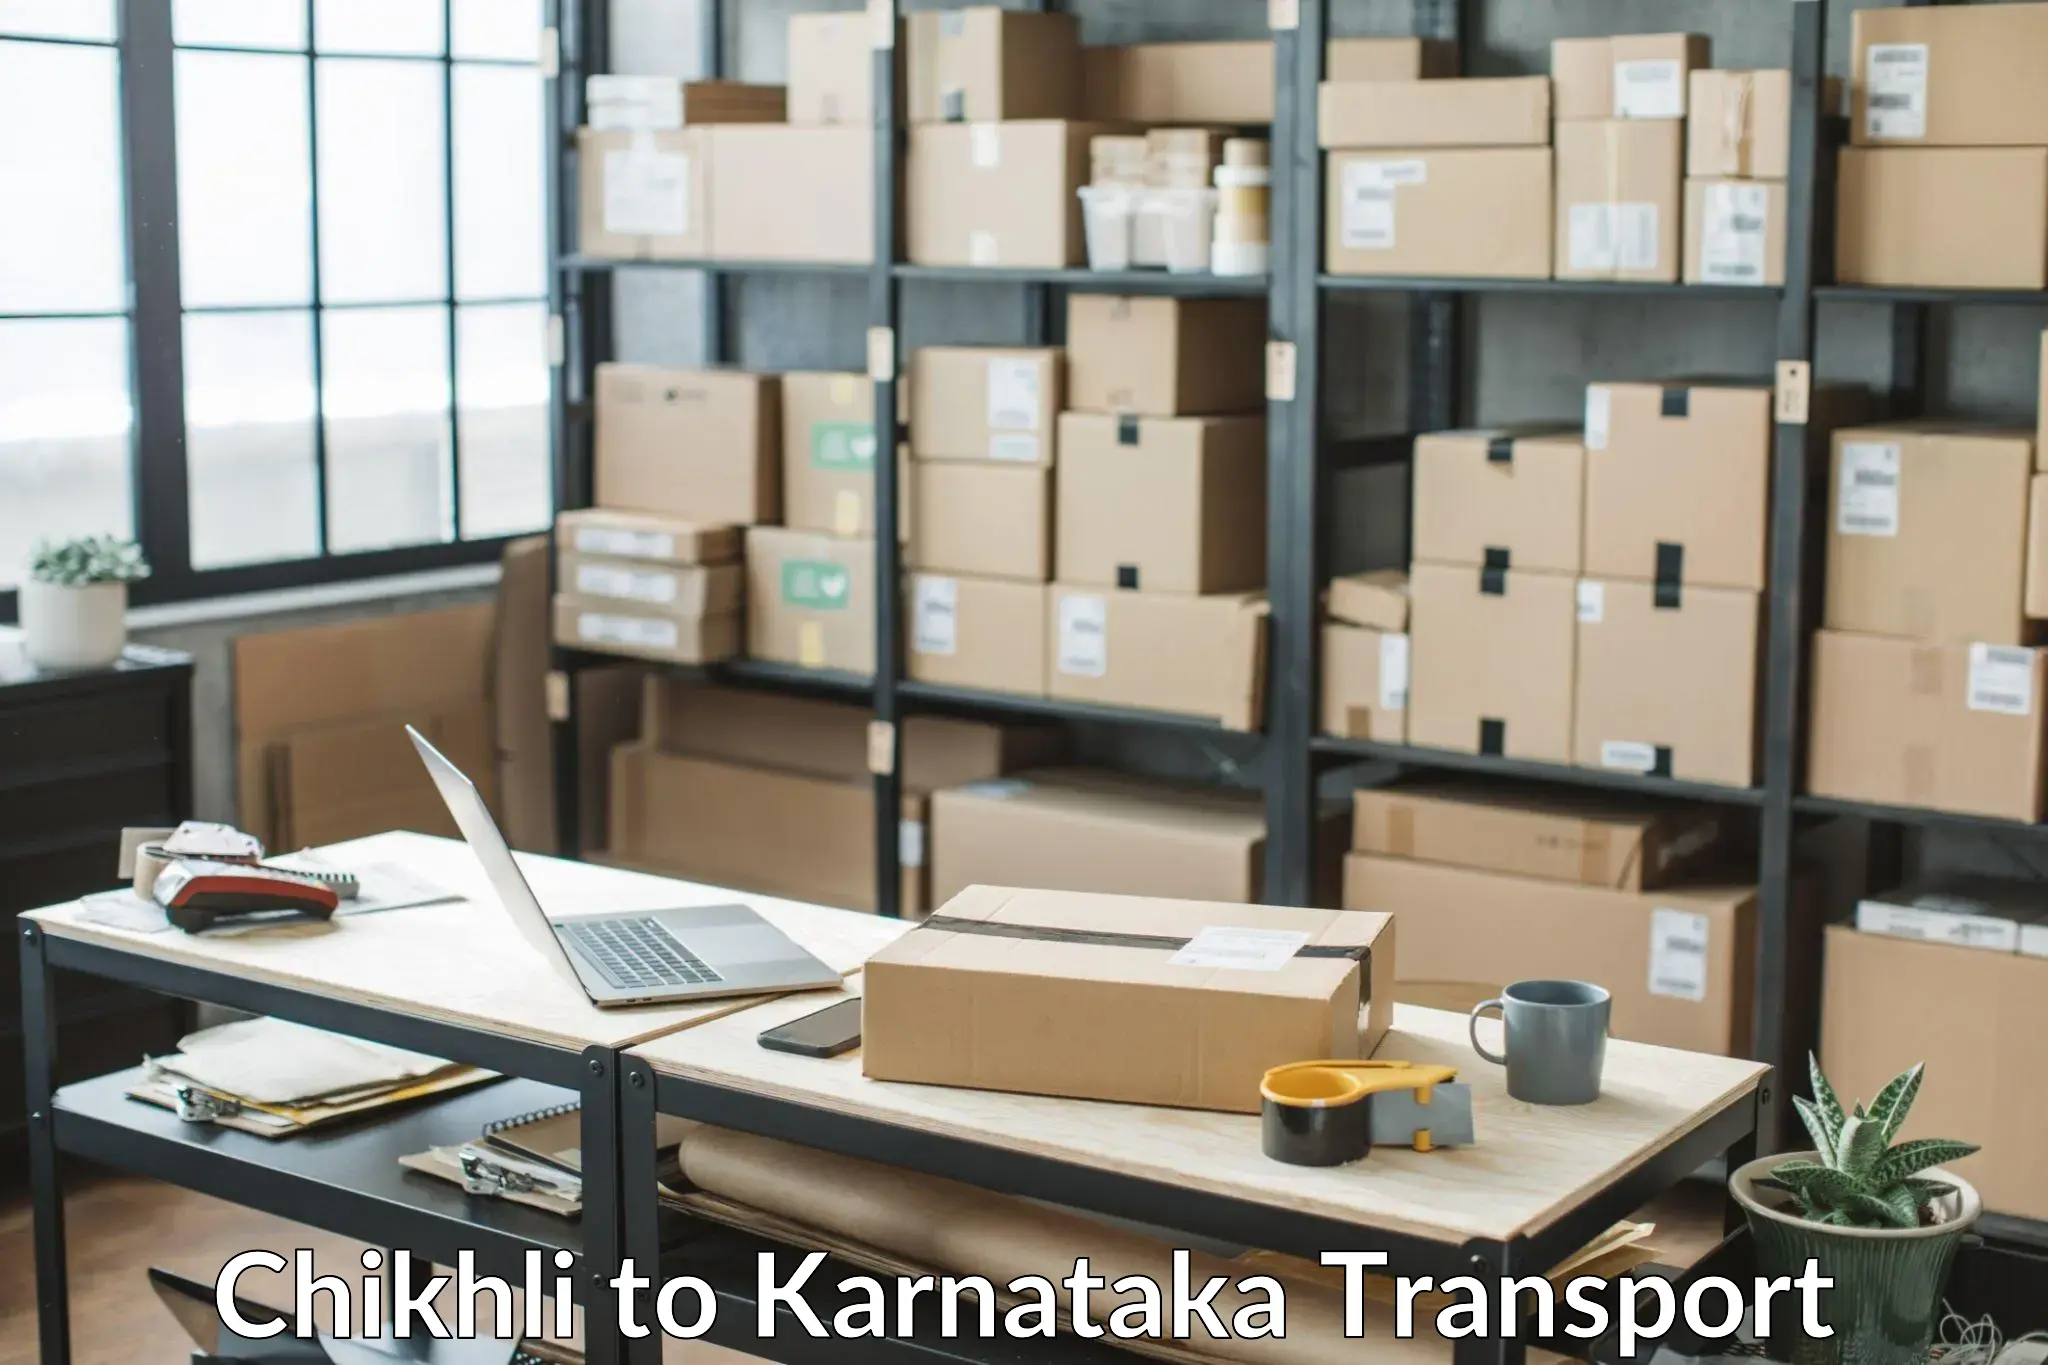 Online transport service Chikhli to Karnataka